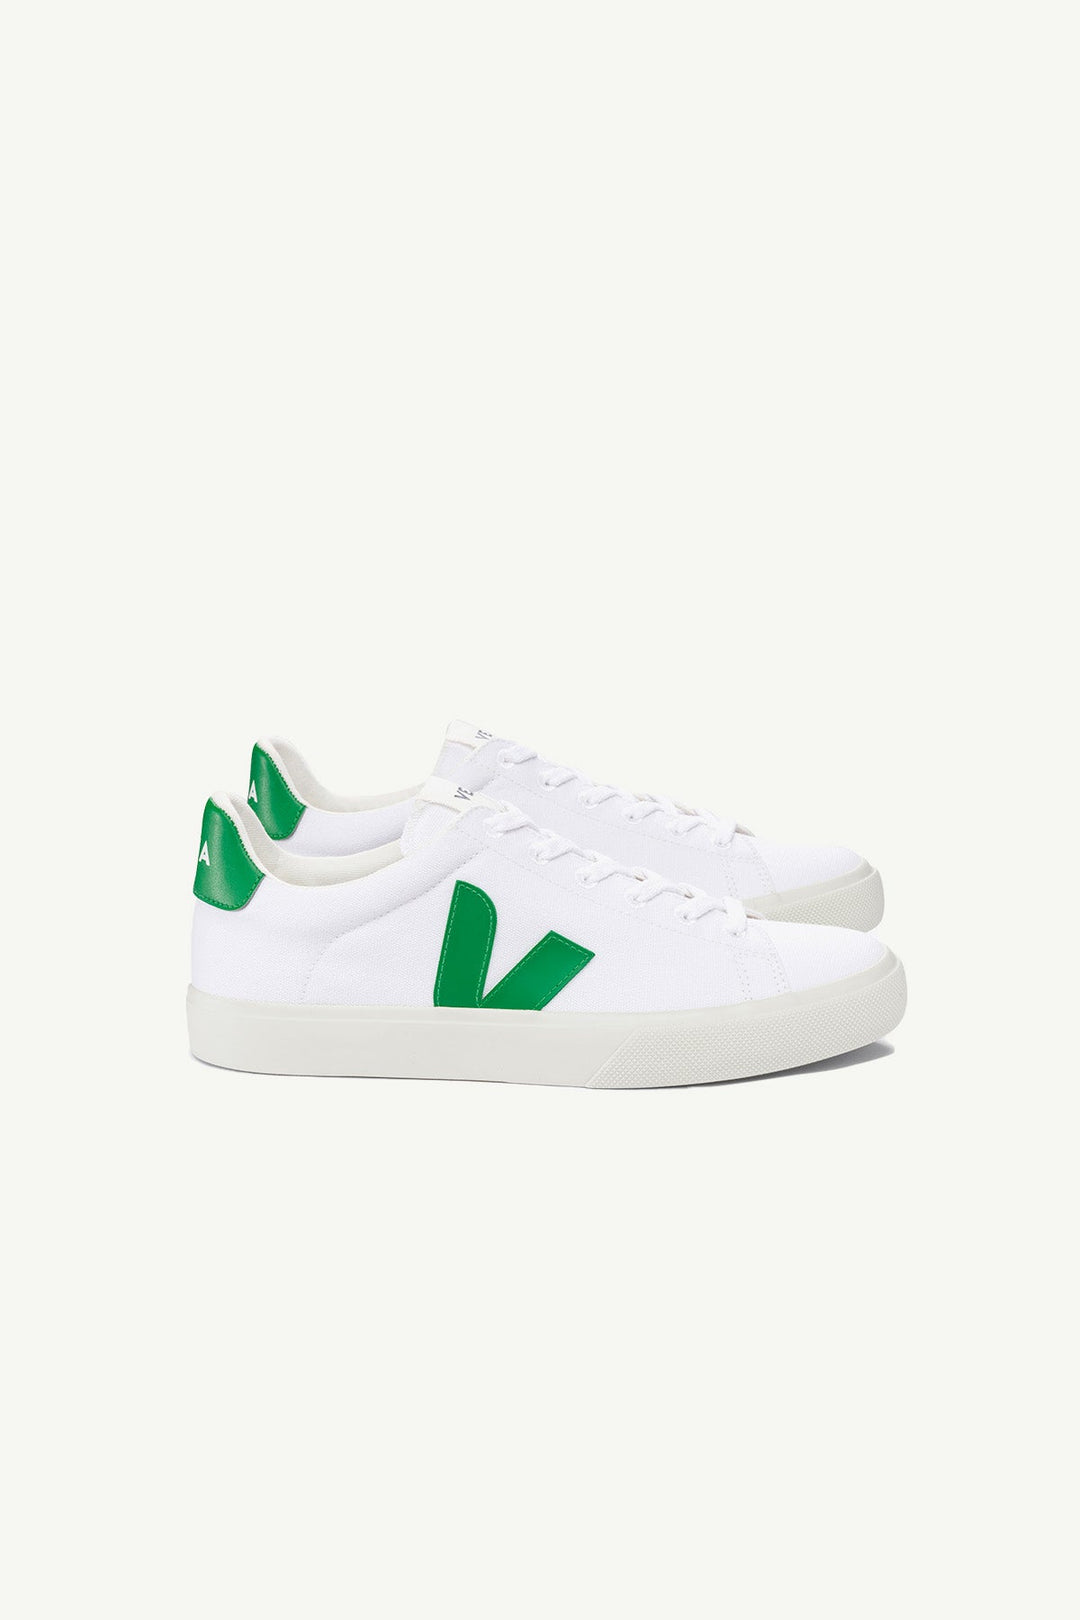 נעלי Campo Canvas בצבע ירוק - Veja